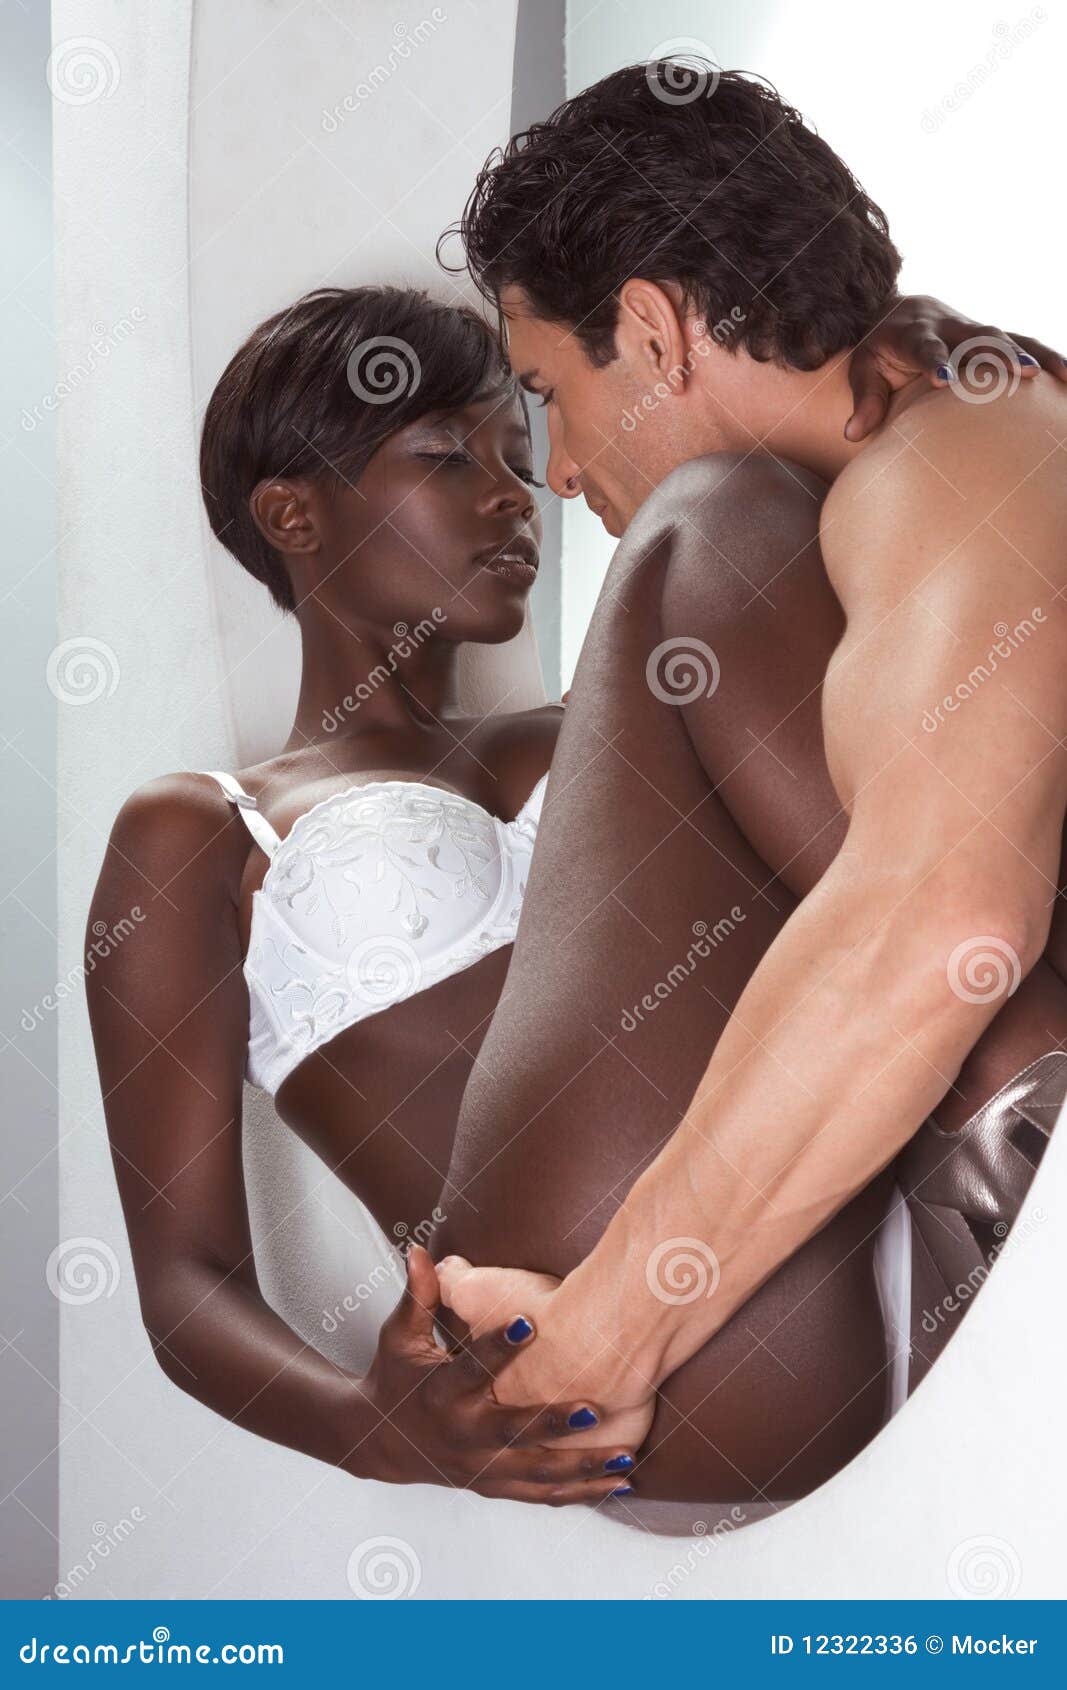 Nude Black Men And Women 80